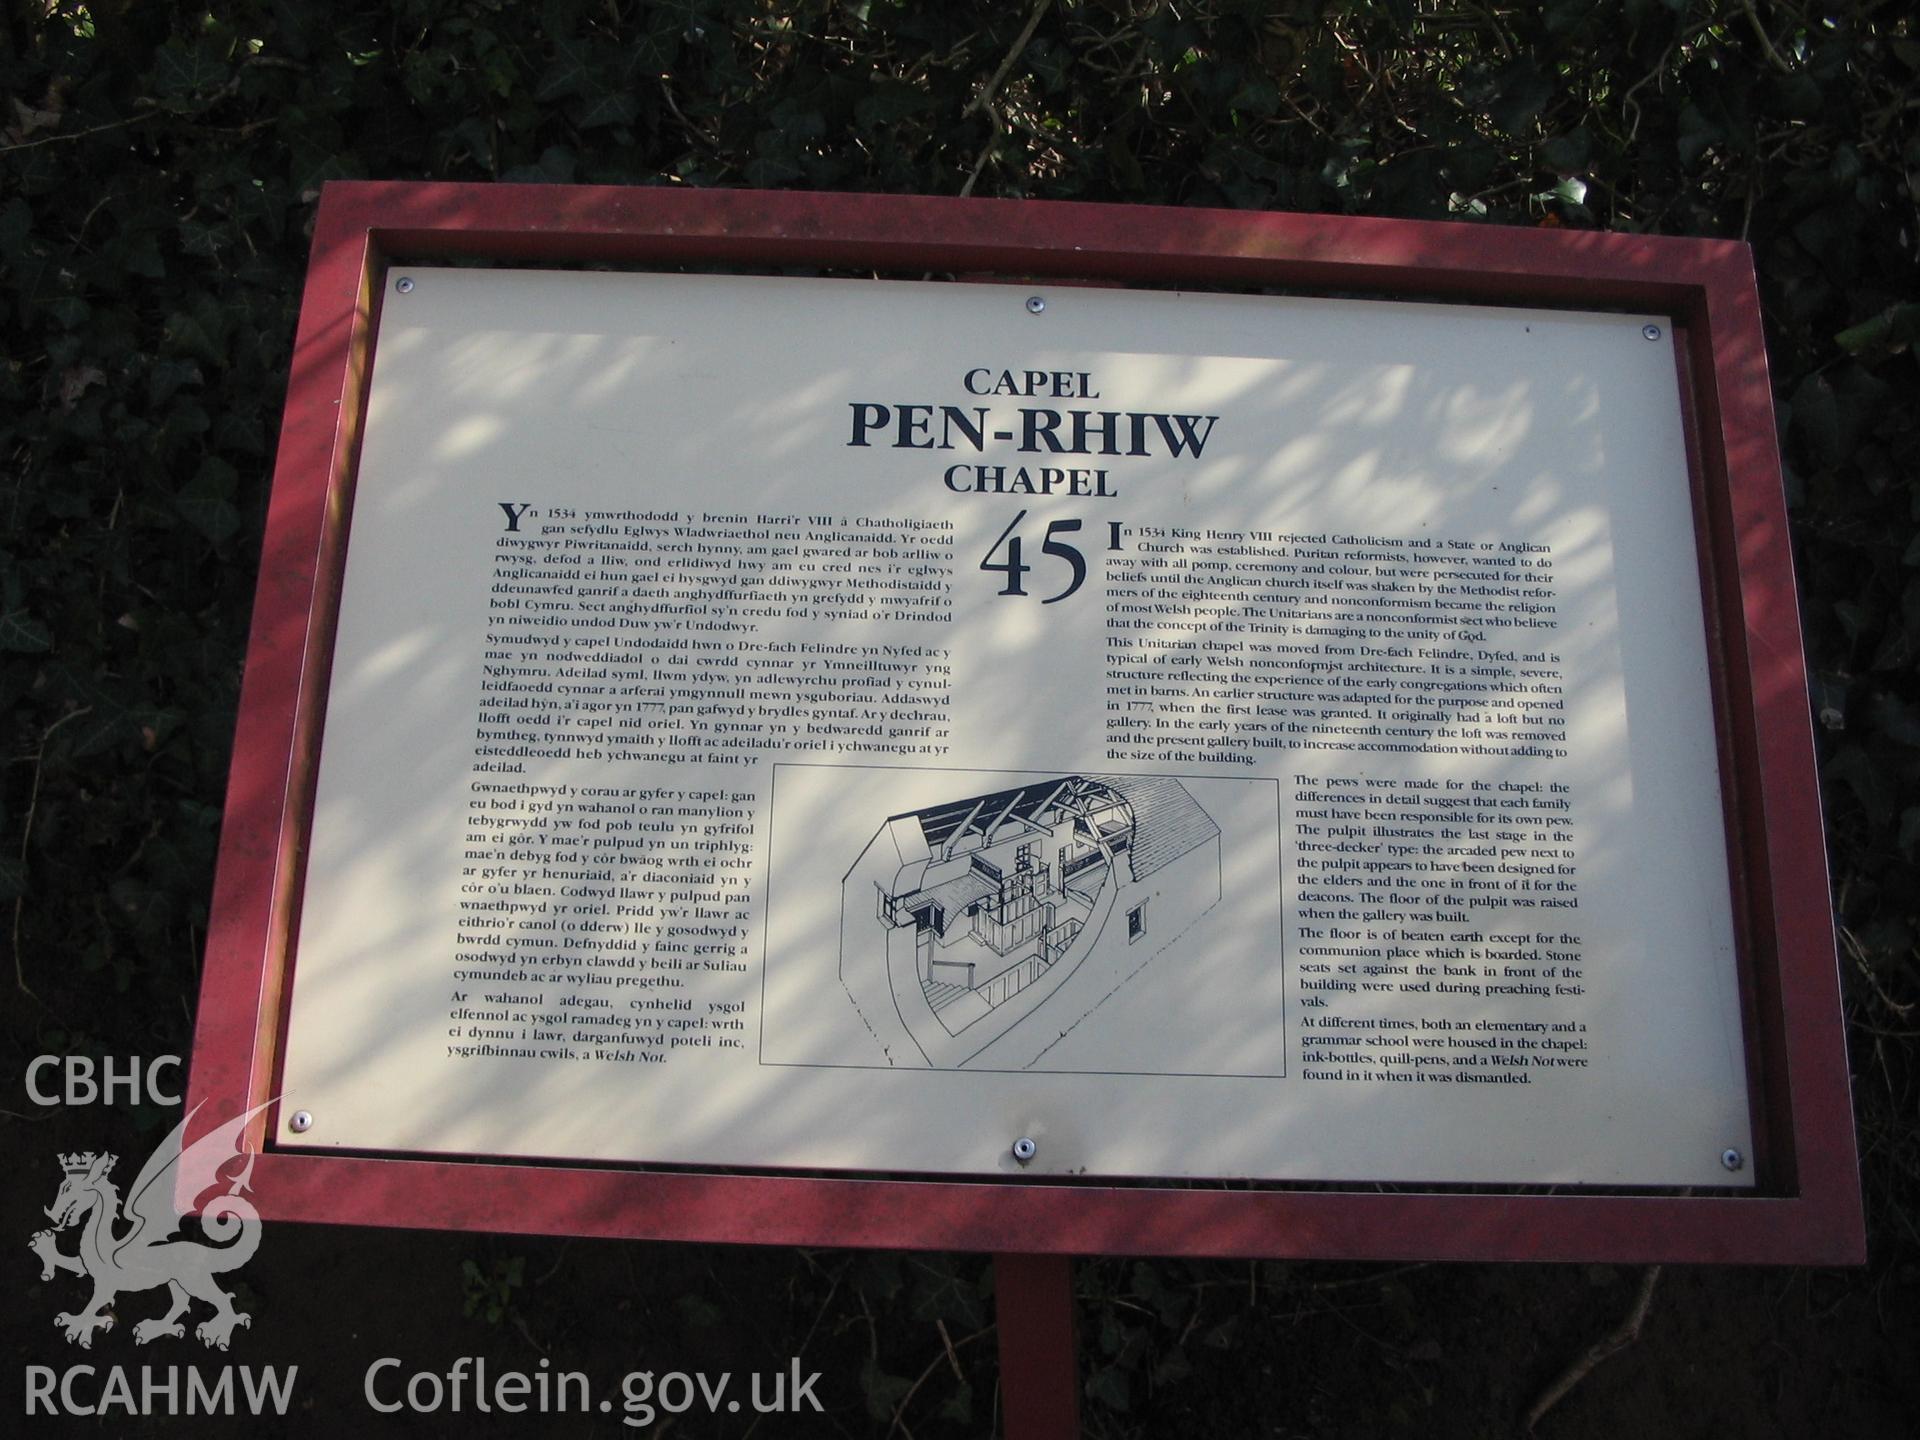 Colour digital photograph showing an information plaque about Pen-Rhiw Unitarian Chapel, Welsh Folk Museum, Castle Hill, St. Fagans.